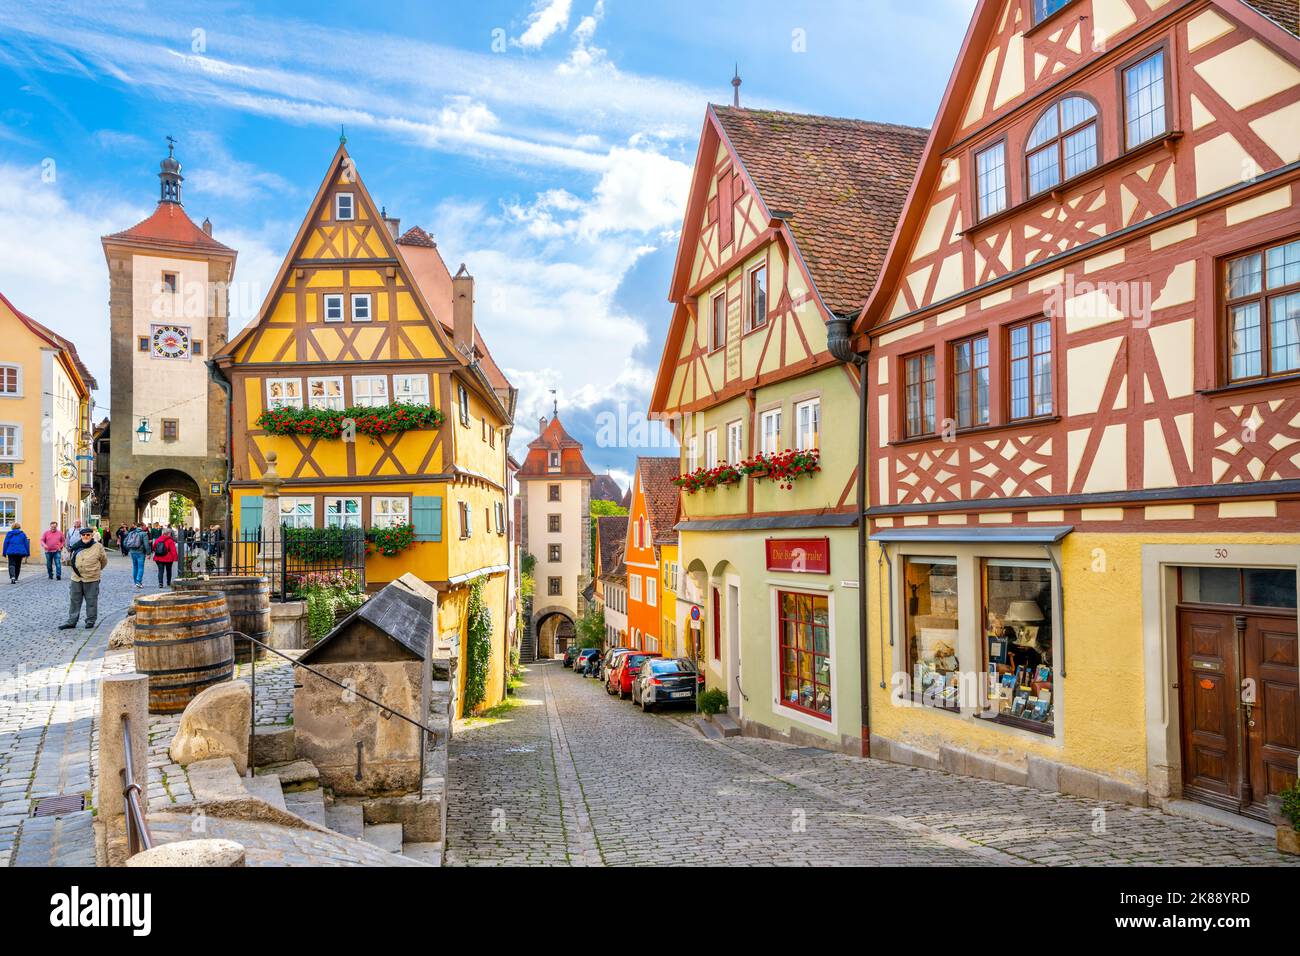 Le pittoresque Plönlein, ou petite place, une célèbre fente dans la route du village bavarois de Rothenburg ob der Tauber, en Allemagne. Banque D'Images